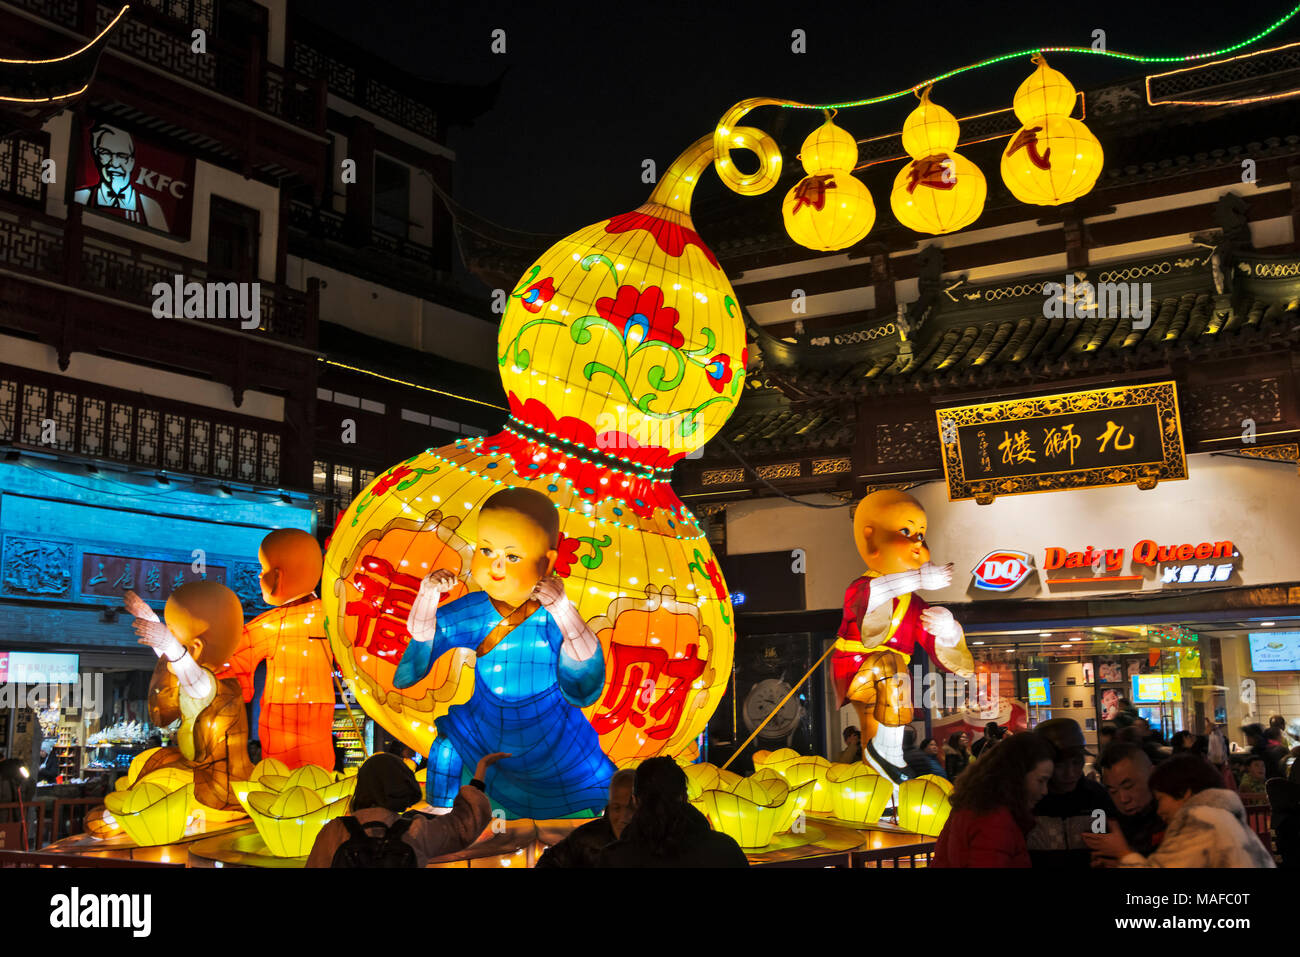 Lumières colorées à Lantern Festival célébrant le Nouvel An chinois dans le jardin Yuyuan, Shanghai, Chine Banque D'Images